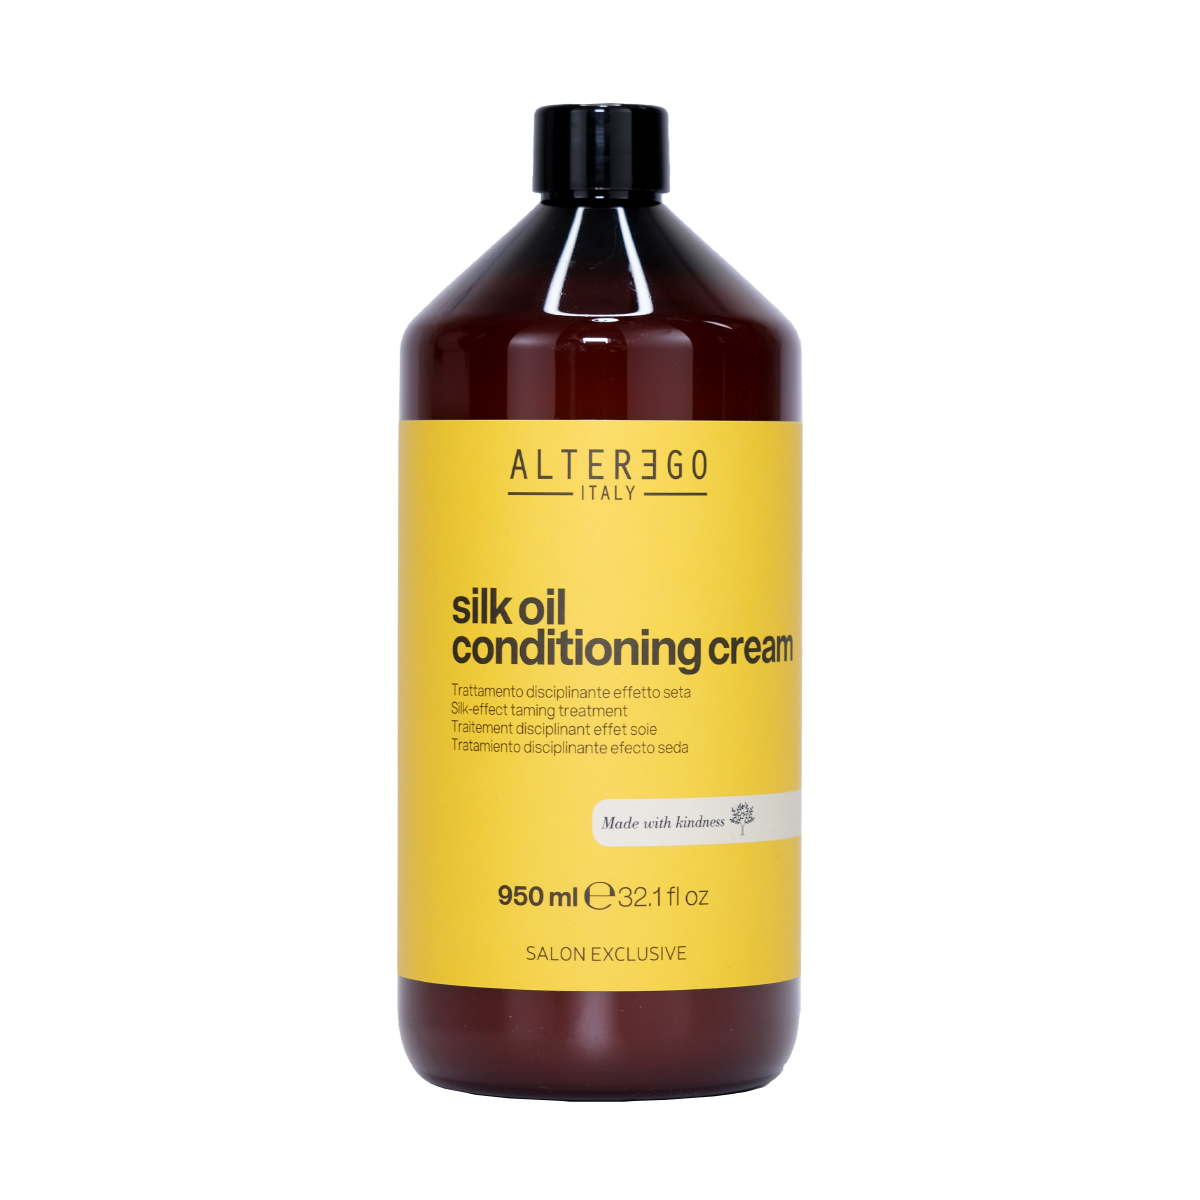 Alterego Italy - Silk Oil Conditioning Cream 950 ml